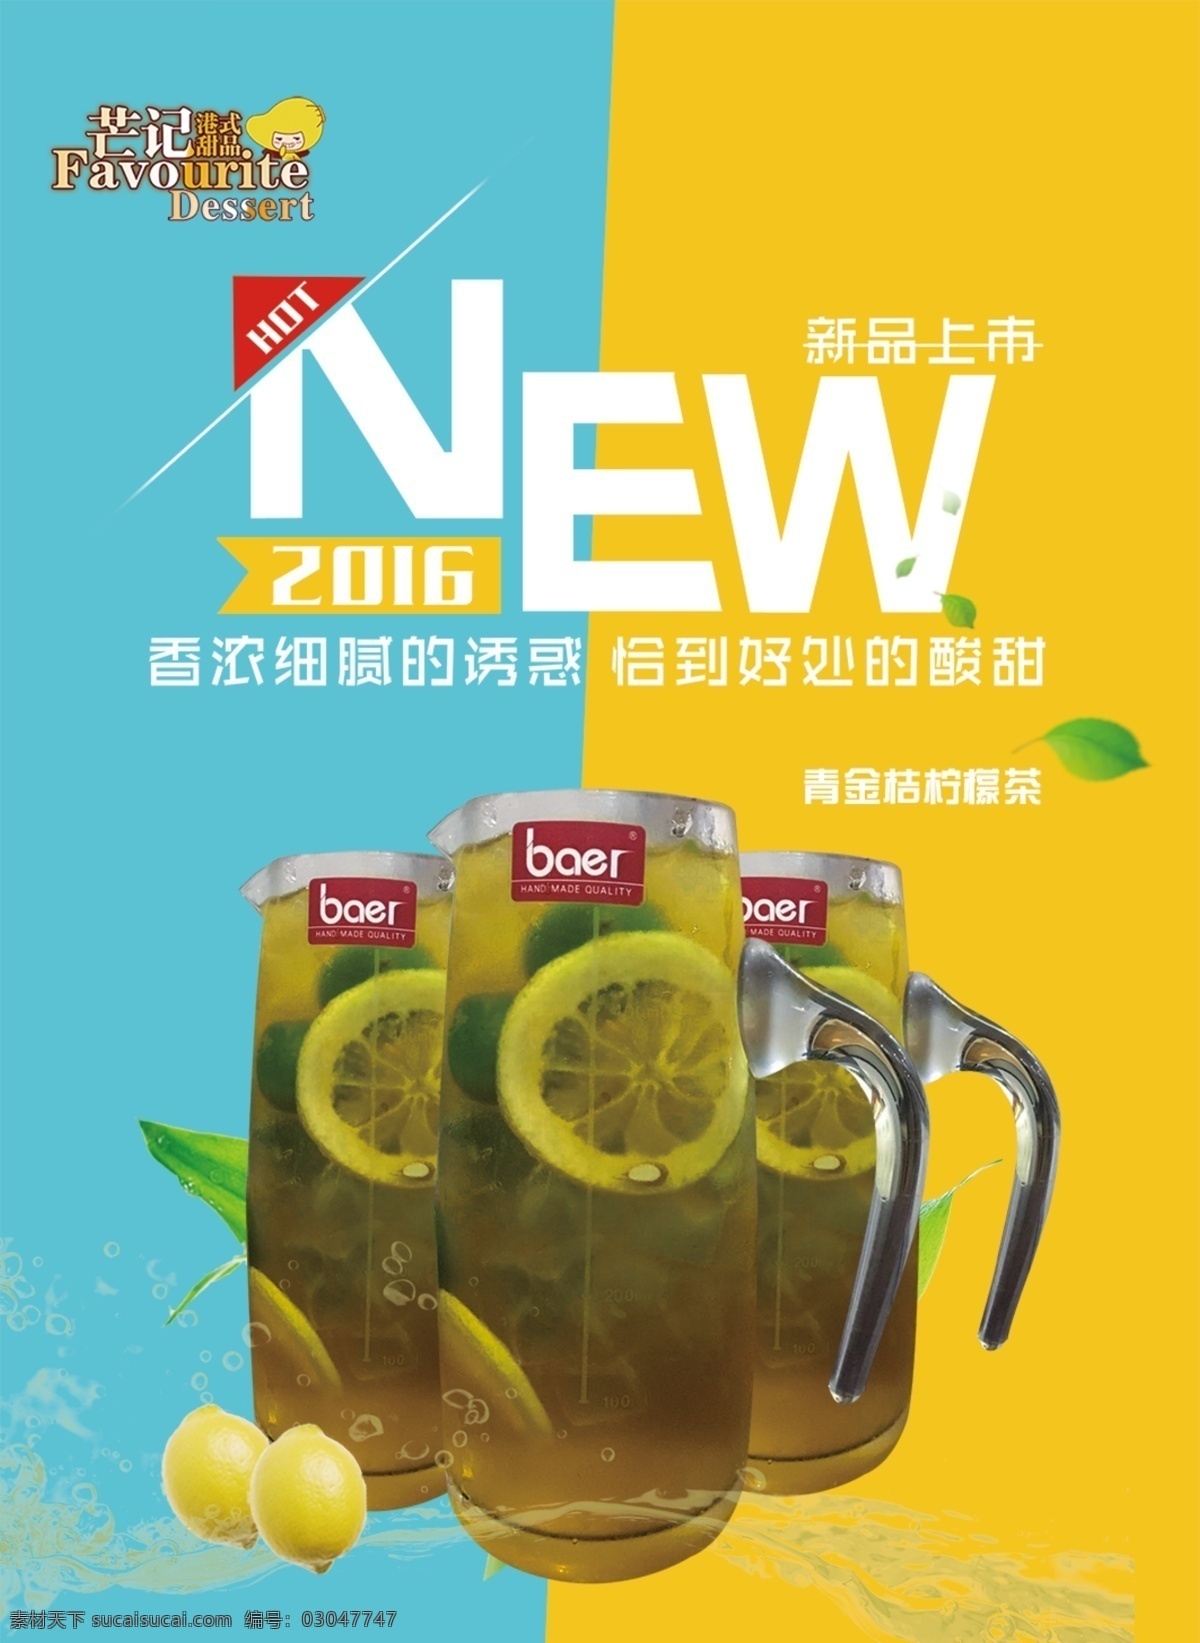 青金桔柠檬茶 饮品海报 原创设计图 蓝色 黄色 柠檬 2016 年 海报